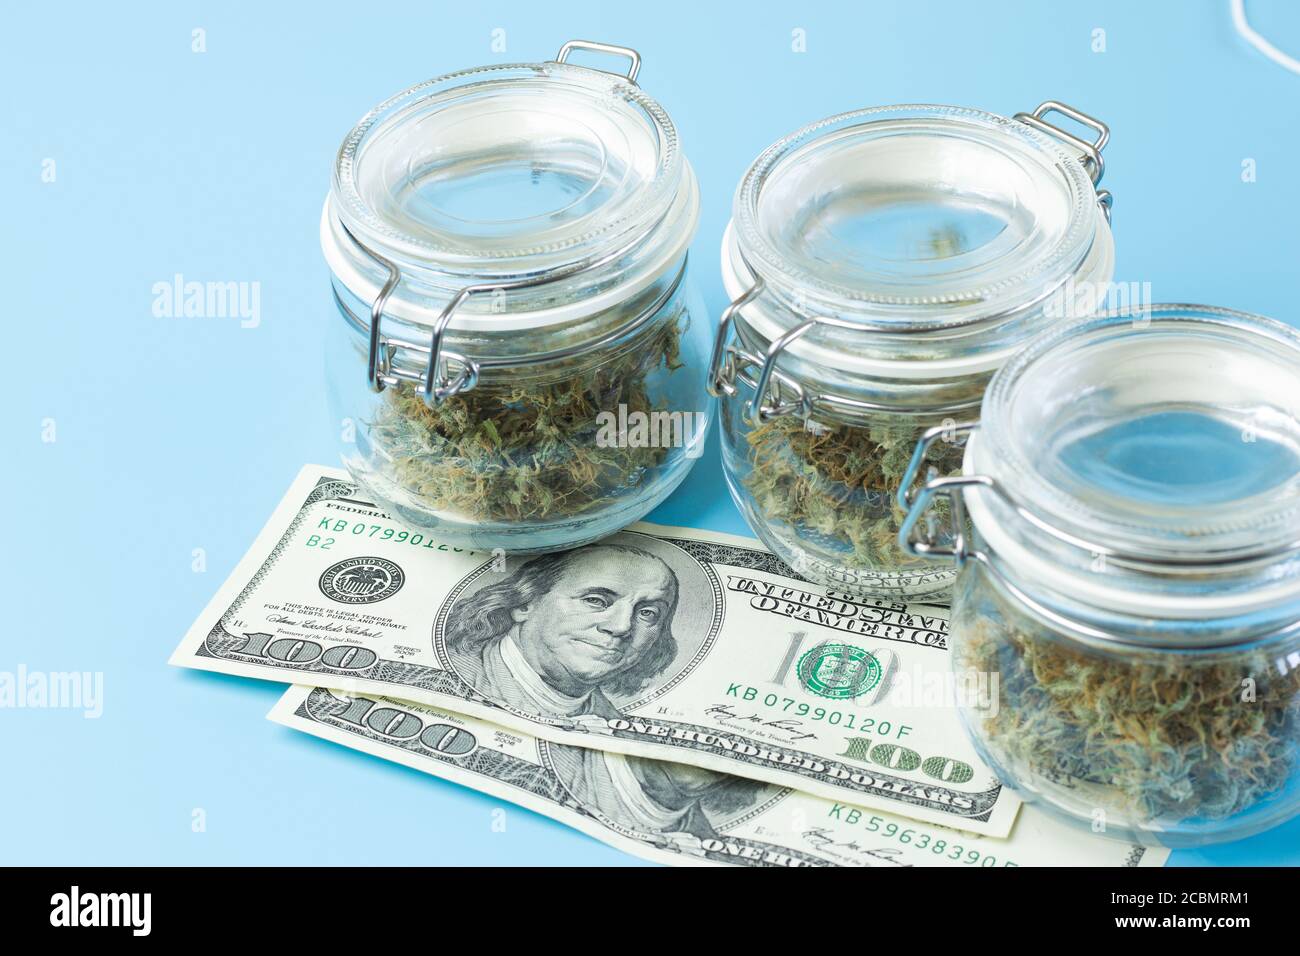 Hintergrund mit Marihuanaknospen in Gefäßen, medizinischer Cannabiskonsum im Gesundheitskonzept. Unkrautbranche Stockfoto